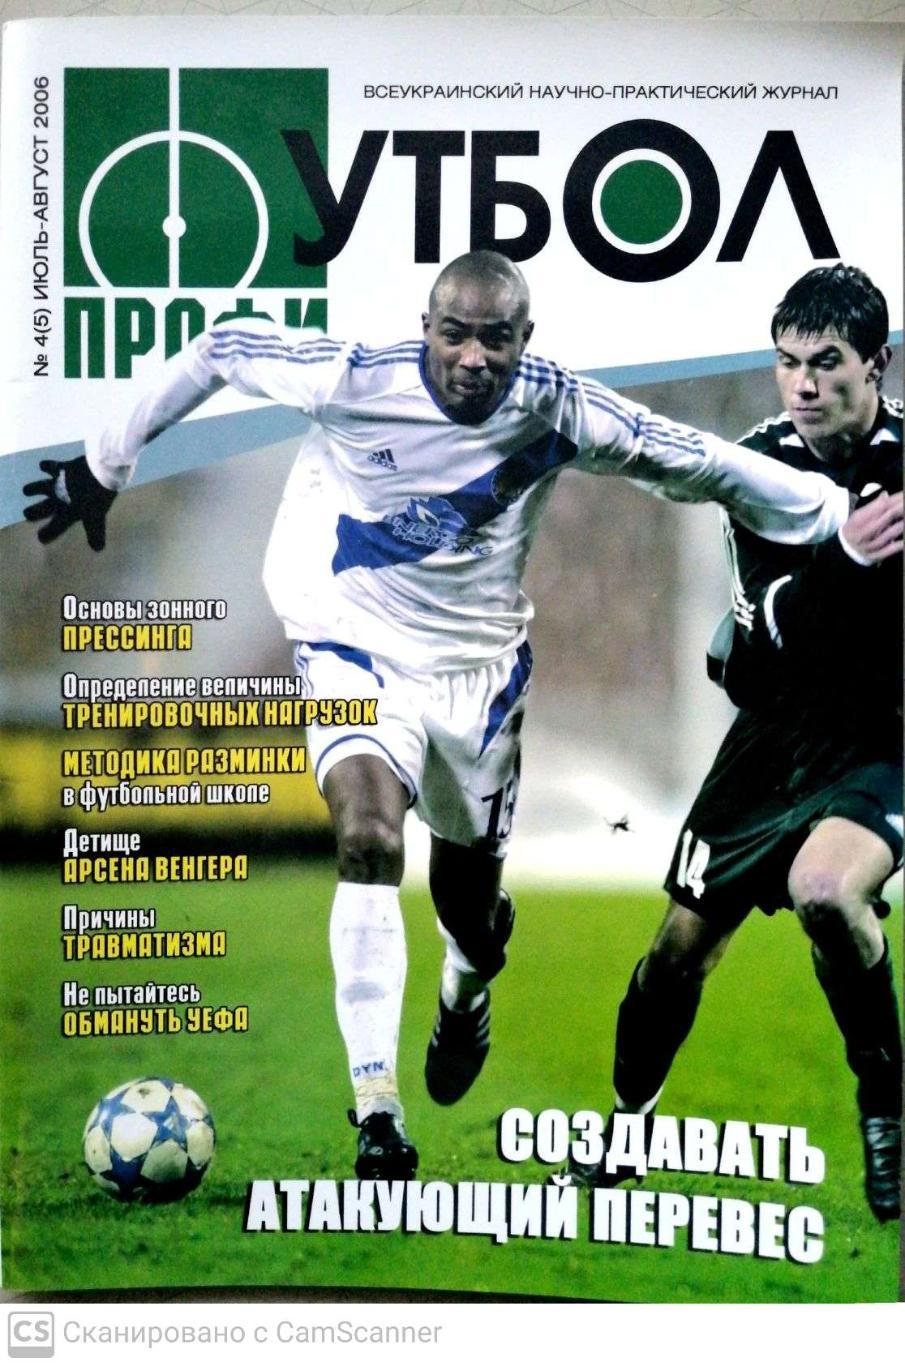 Журнал Спорт-Профи, июль-август 2006 (Украина)